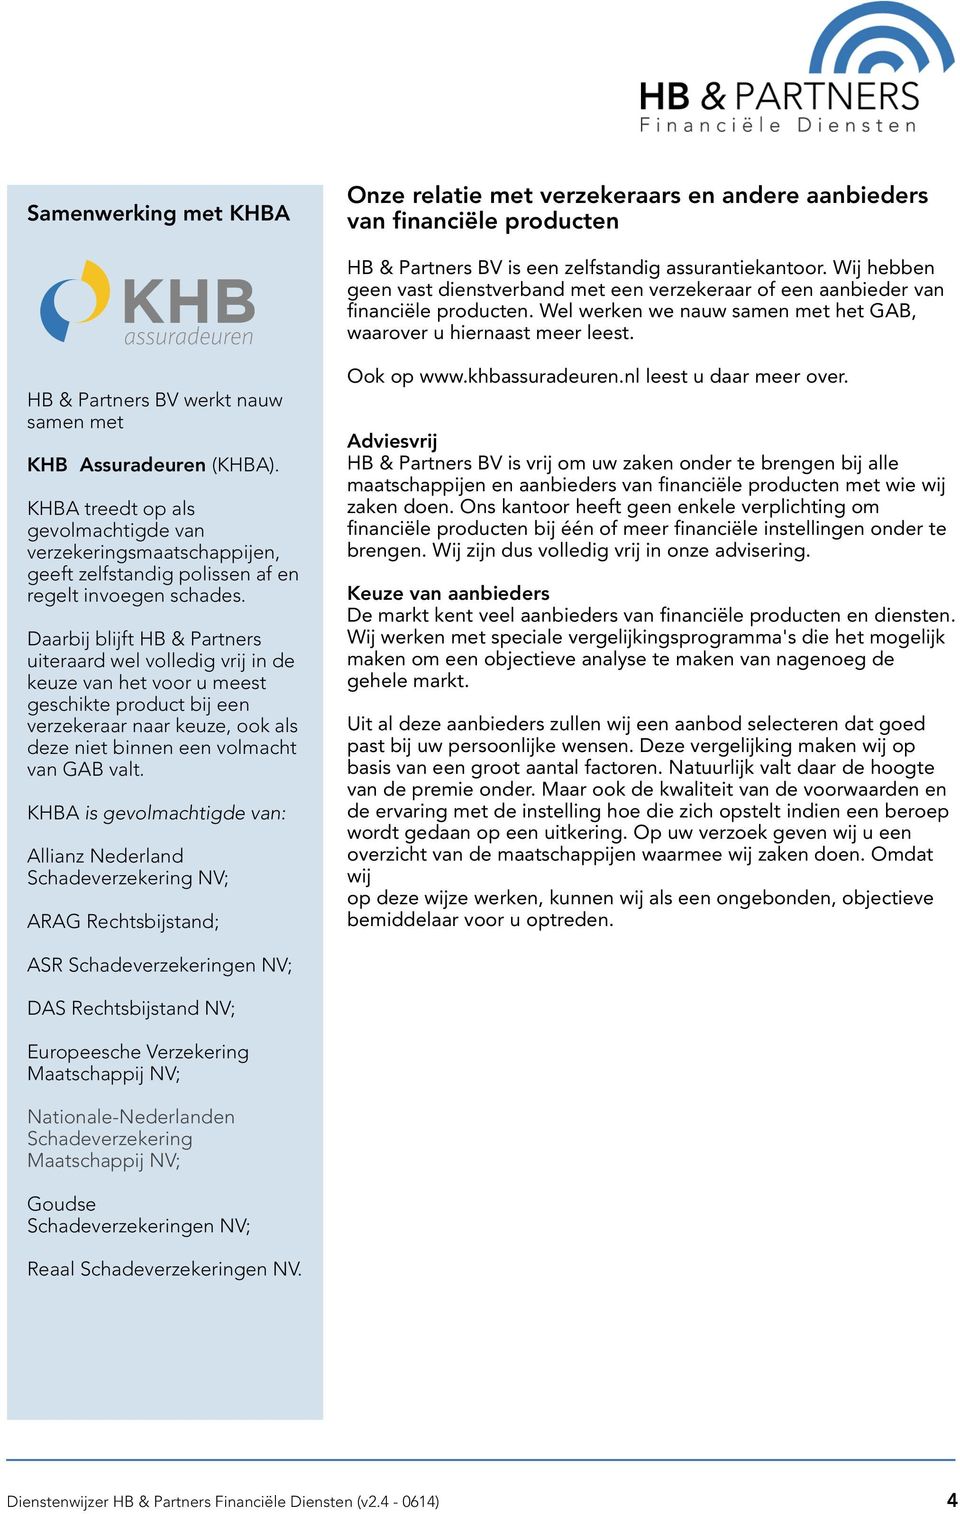 HB & Partners BV werkt nauw samen met KHB Assuradeuren (KHBA). KHBA treedt op als gevolmachtigde van verzekeringsmaatschappijen, geeft zelfstandig polissen af en regelt invoegen schades.